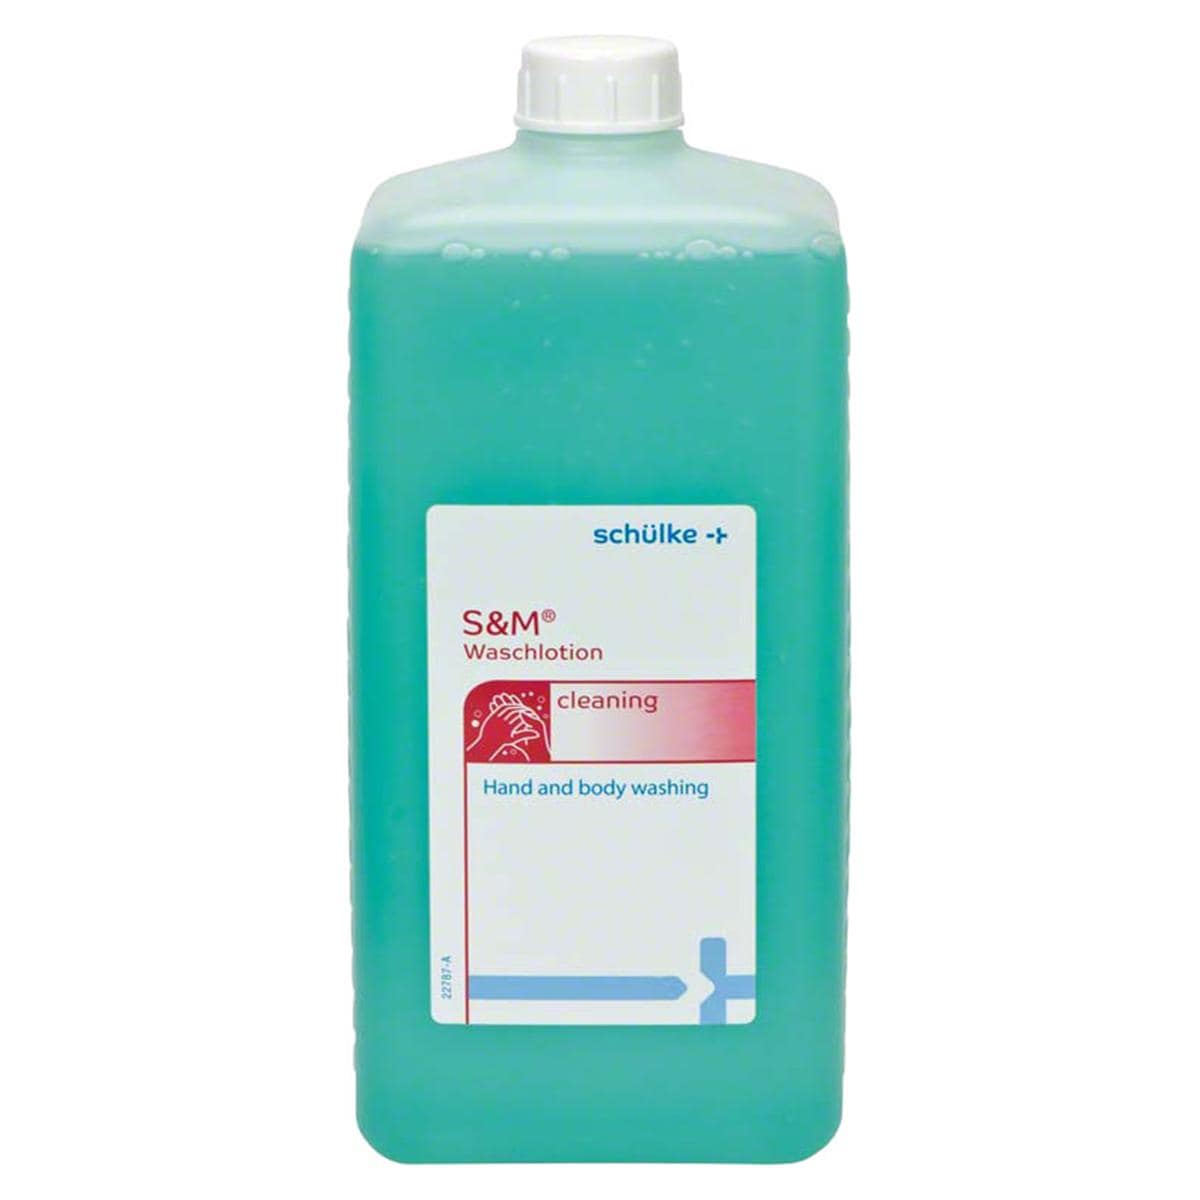 s&m Waschlotion - Euroflasche 1 Liter